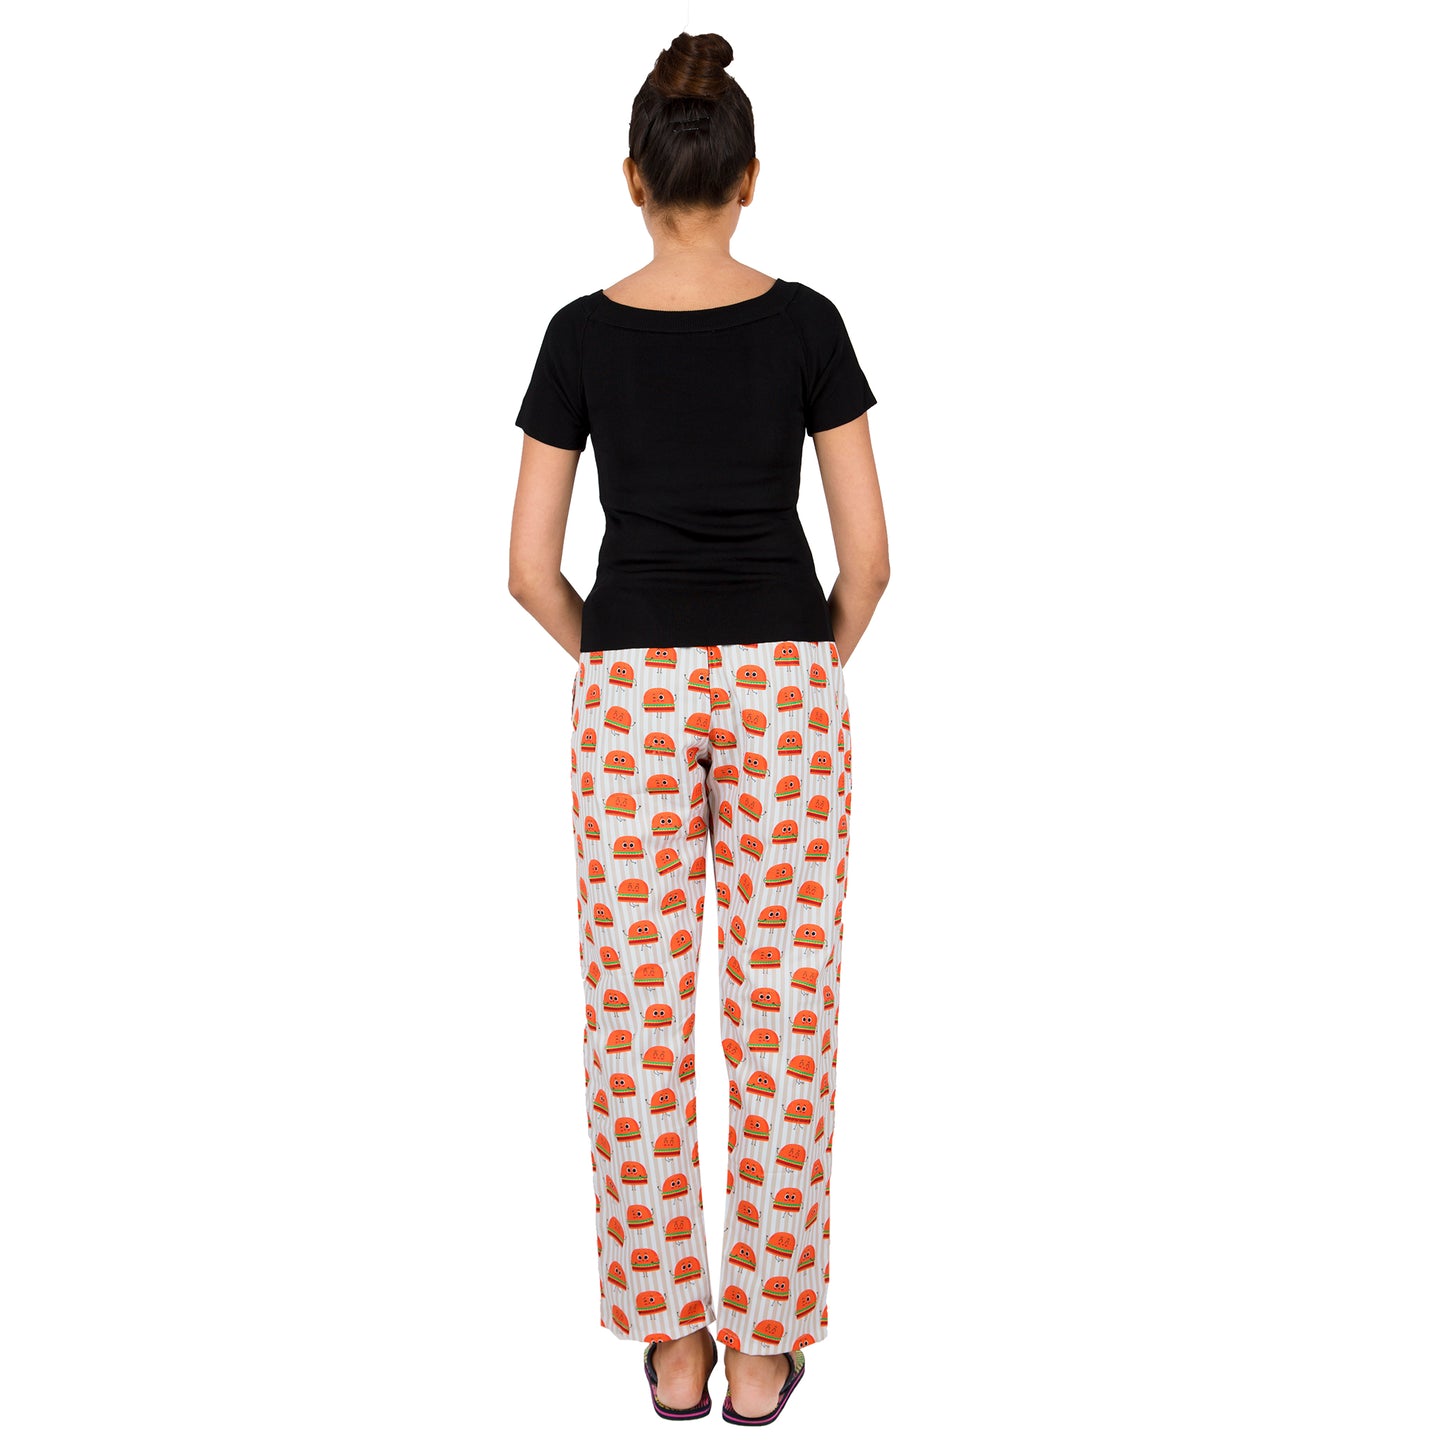 printed-cotton-night wear-pyjamas-with-pockets